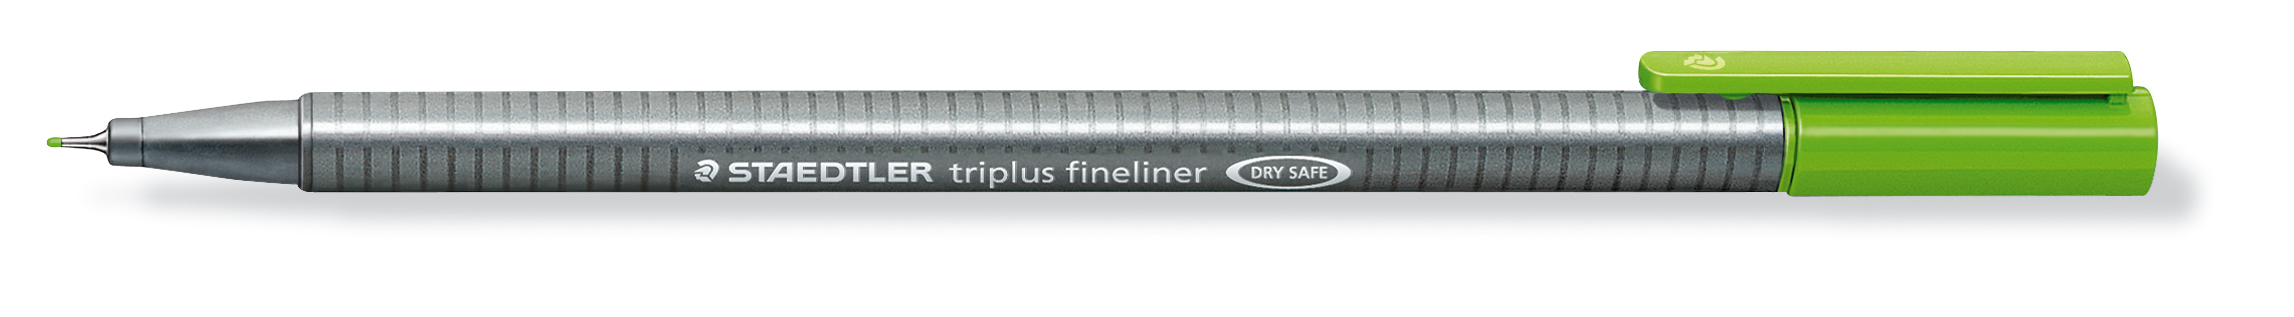 STAEDTLER Triplus Fineliner 0,3mm 334-51 jaune/vert